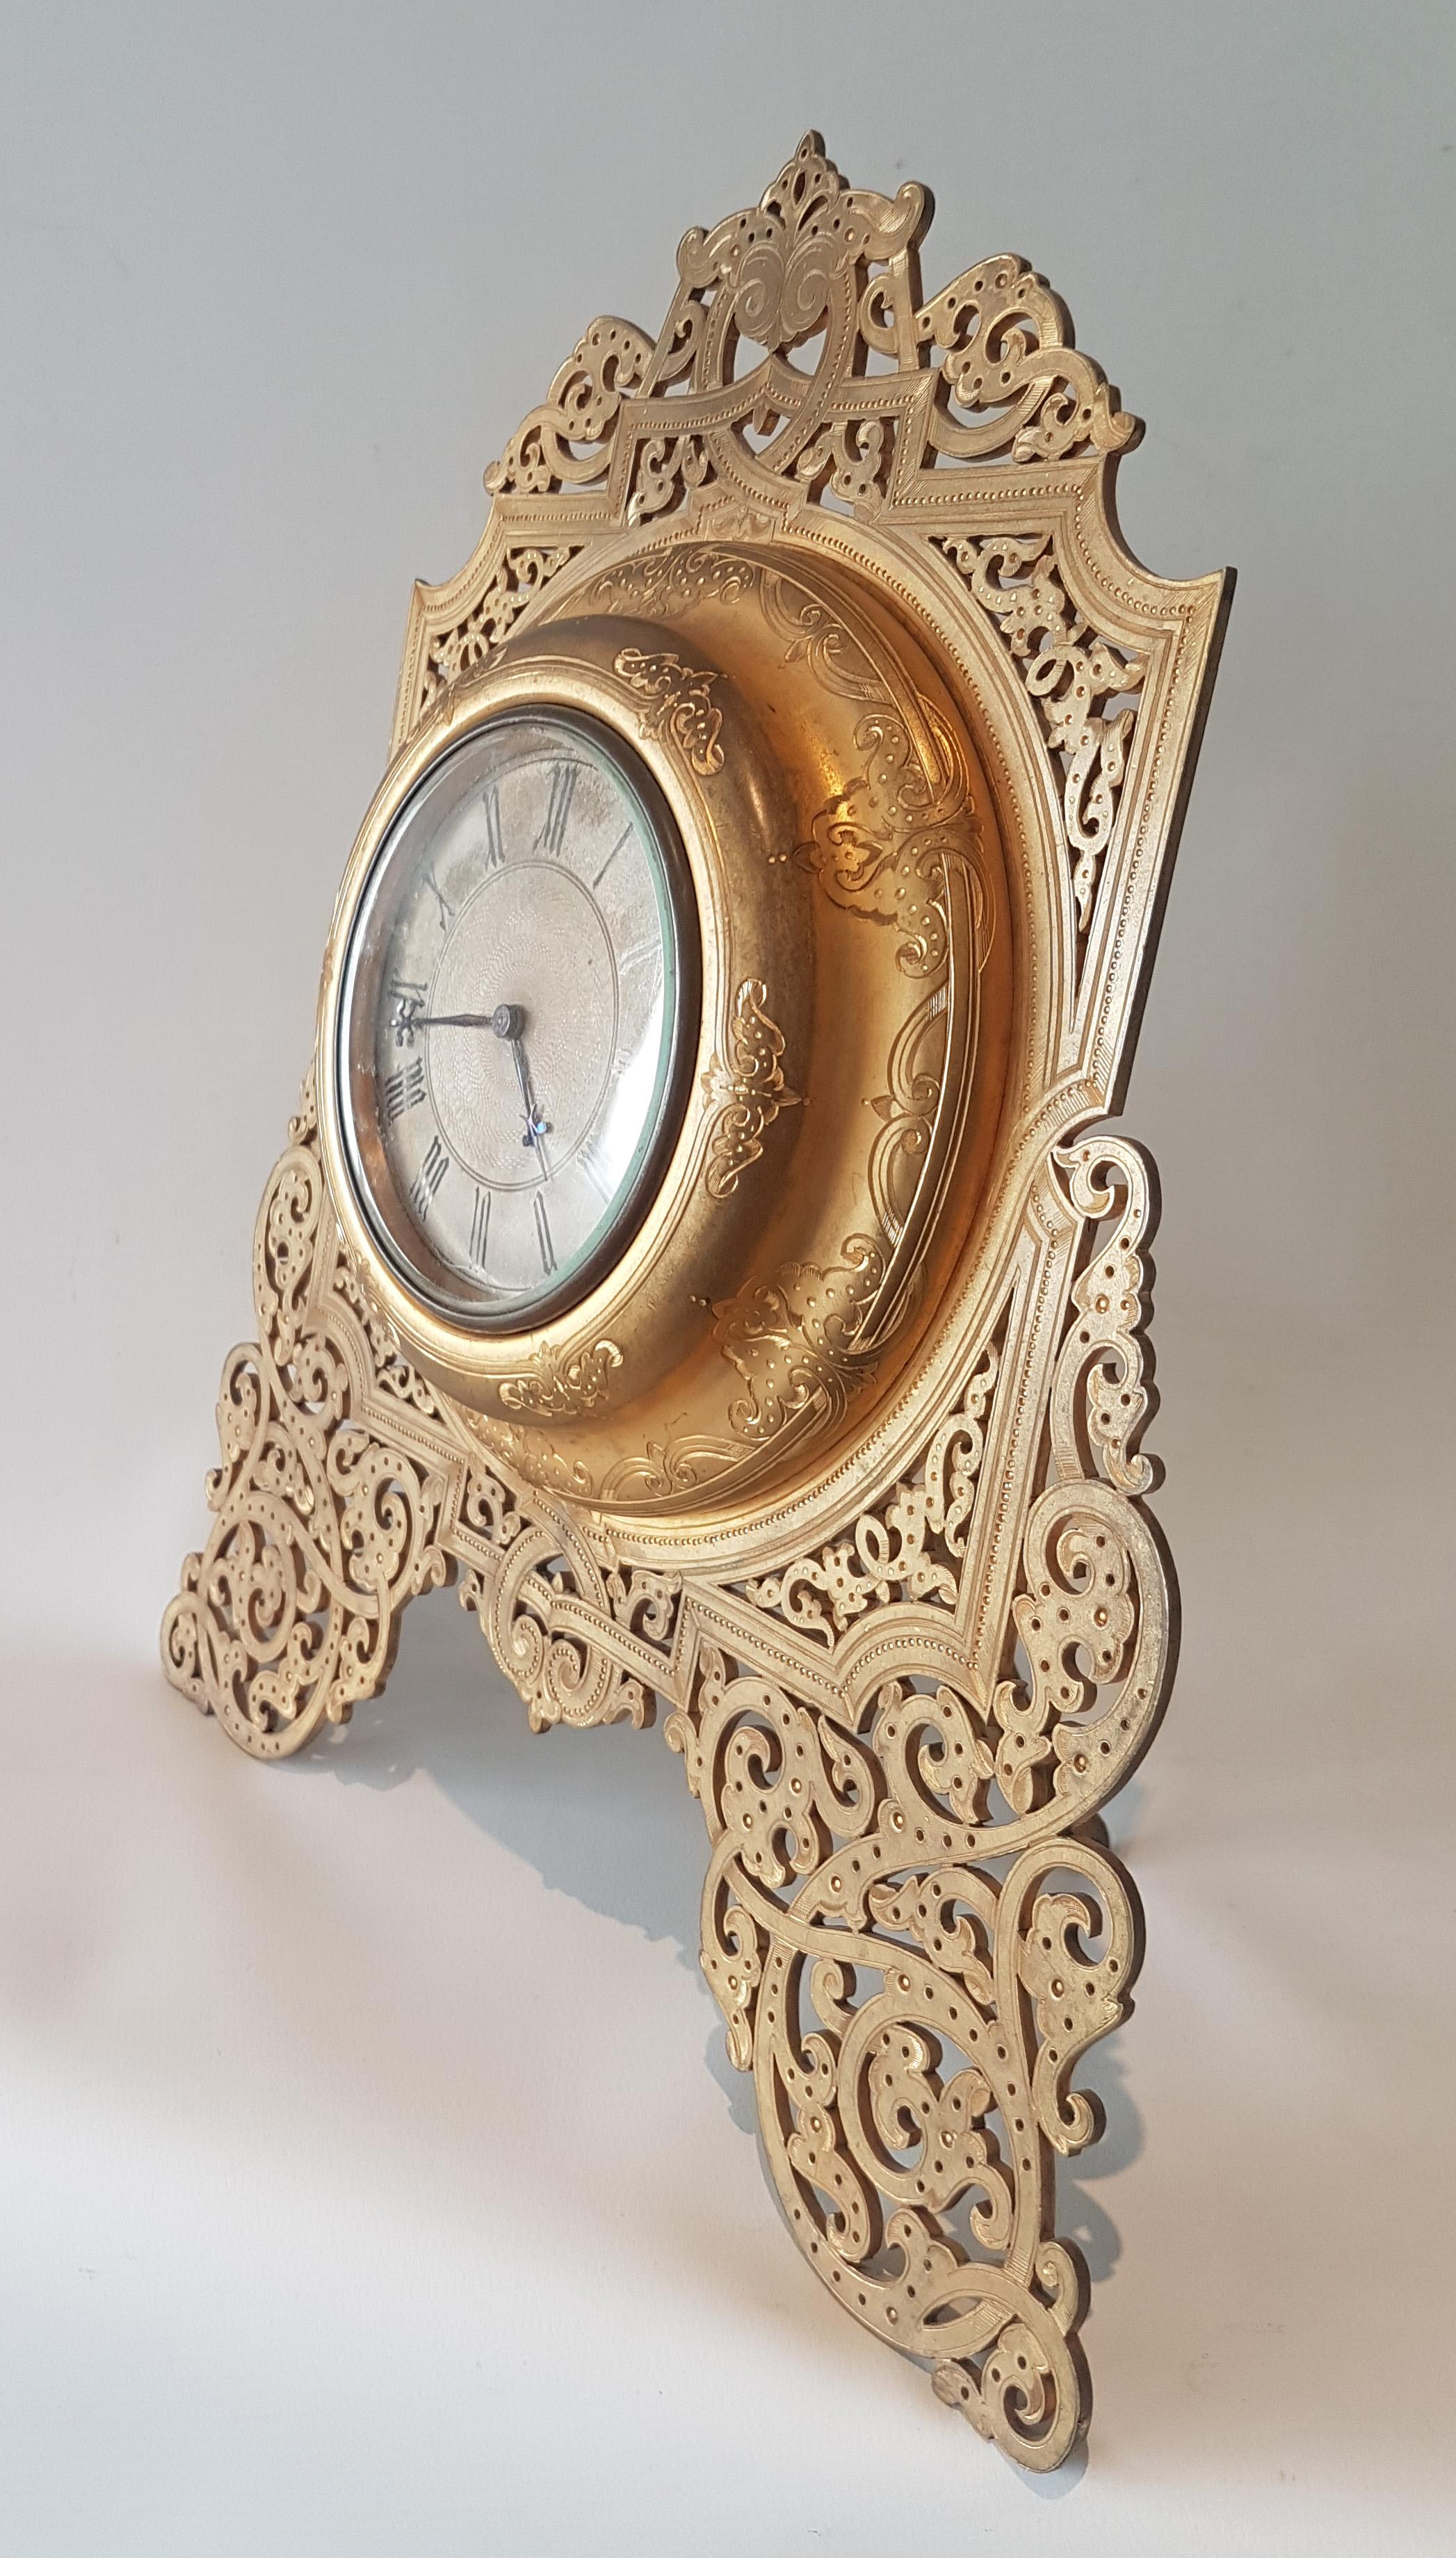 Große schön geschnitten und graviert Ormolu Englisch viktorianischen Strebe Uhr in der Art von Cole. Versilbertes Zifferblatt mit gedrehtem Zentrum und schön geschnittenen gebläuten Stahlzeigern. 8 Tage Hebelwerk.